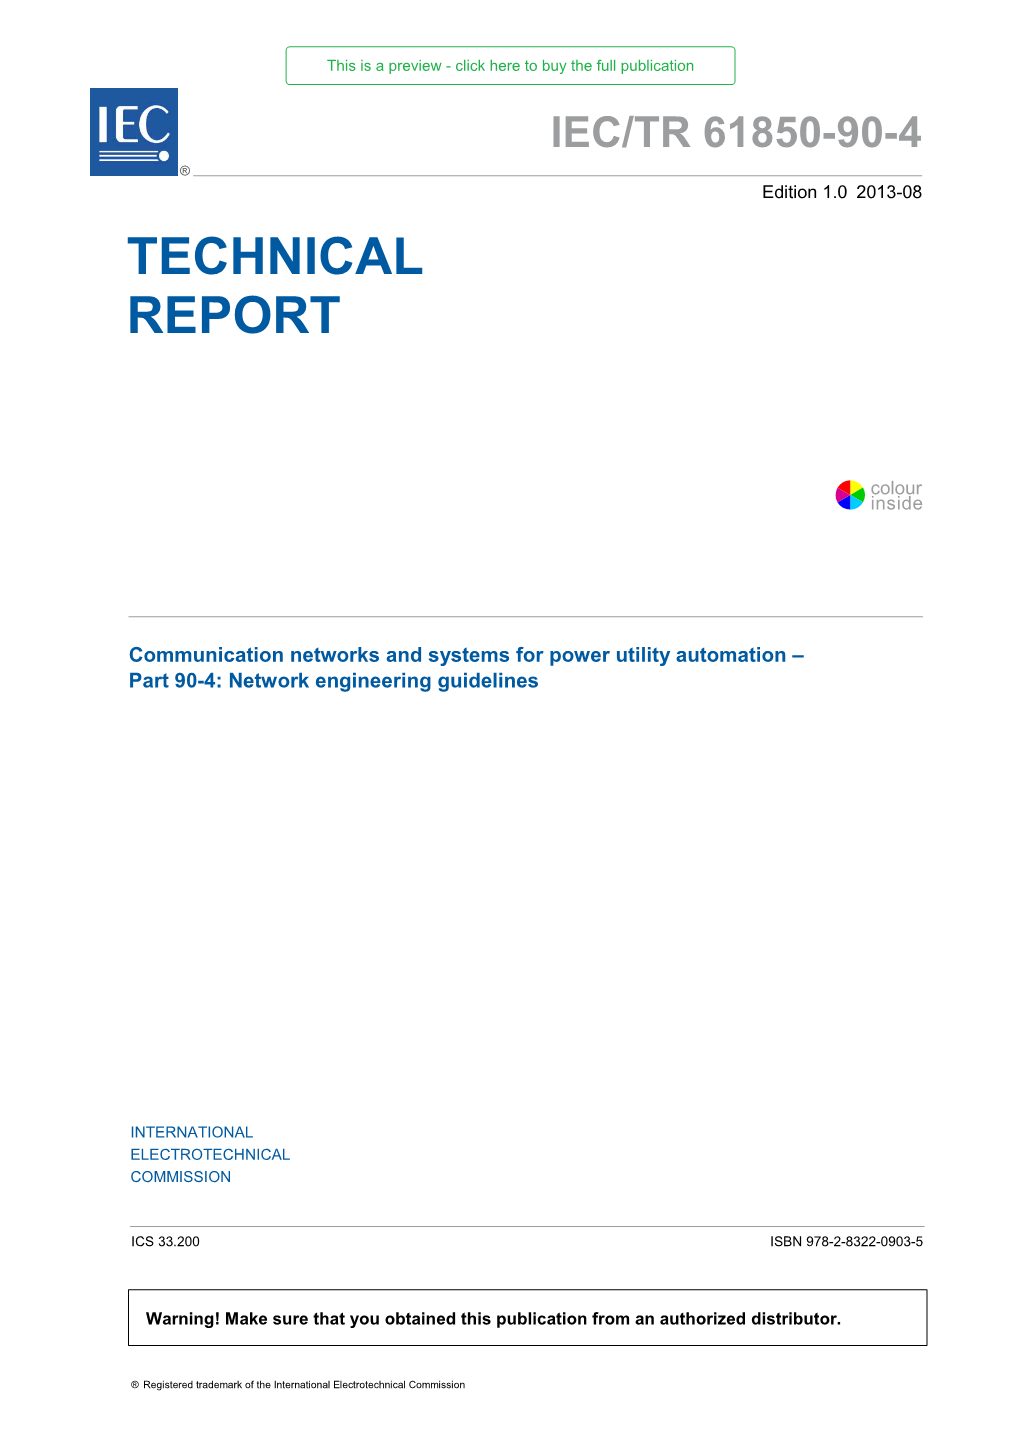 IEC/TR 61850-90-4 ® Edition 1.0 2013-08